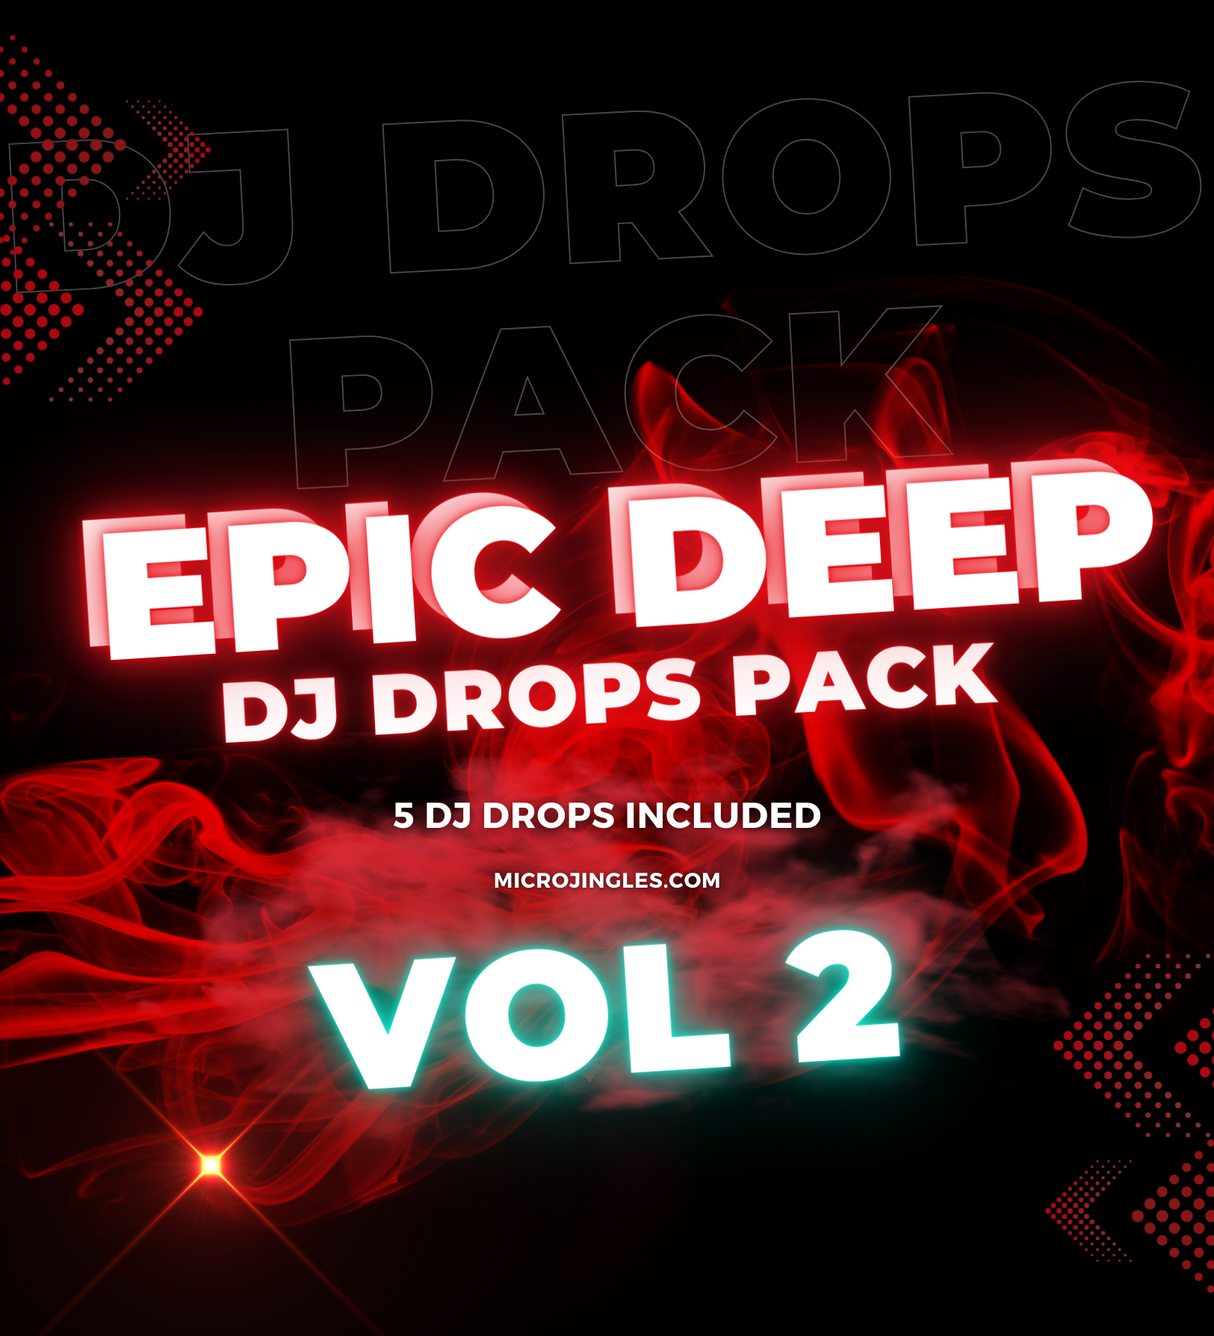 Epic DJ Drops pack Vol 2